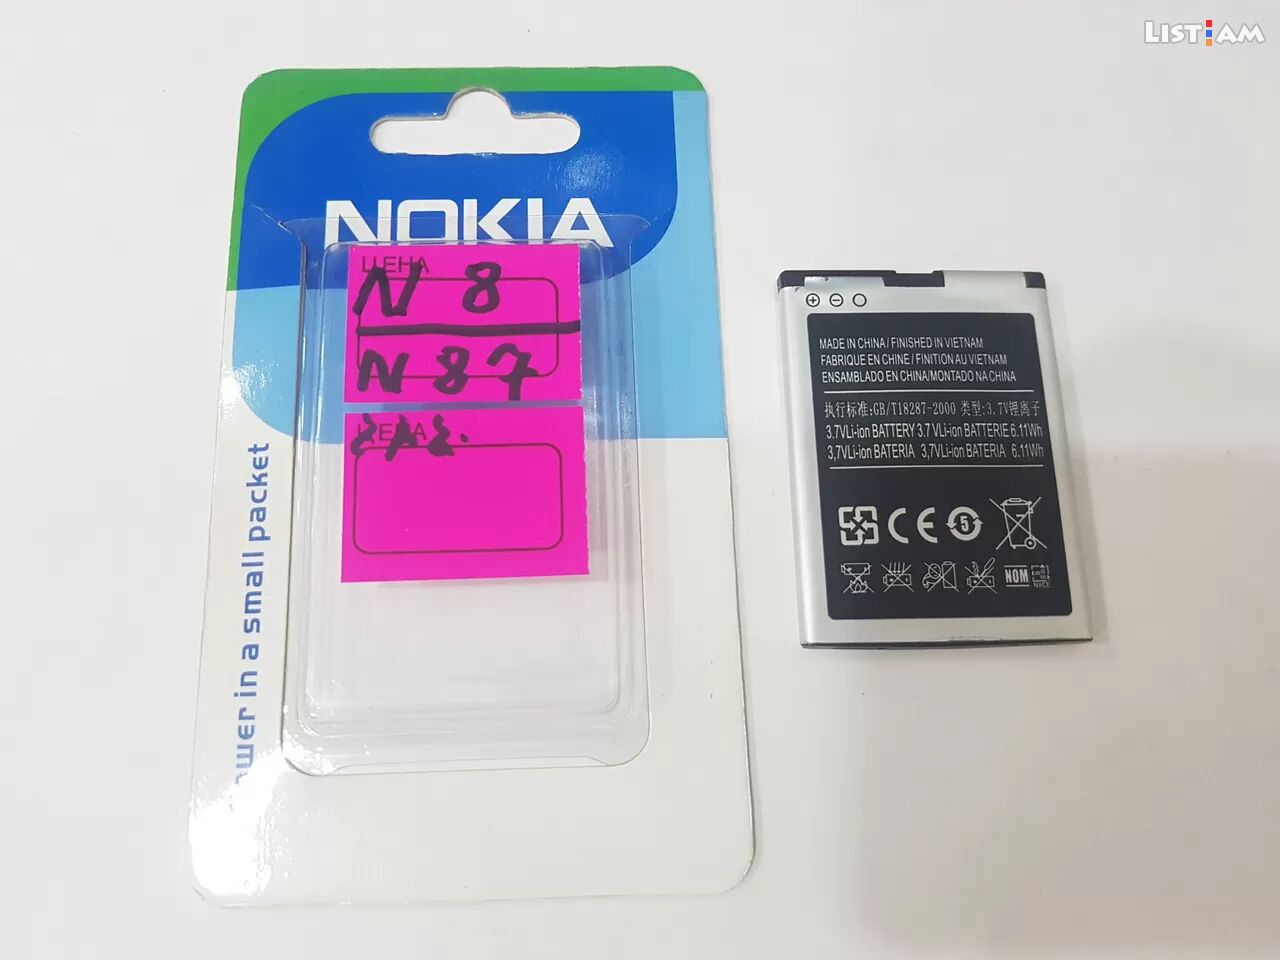 Nokia n8